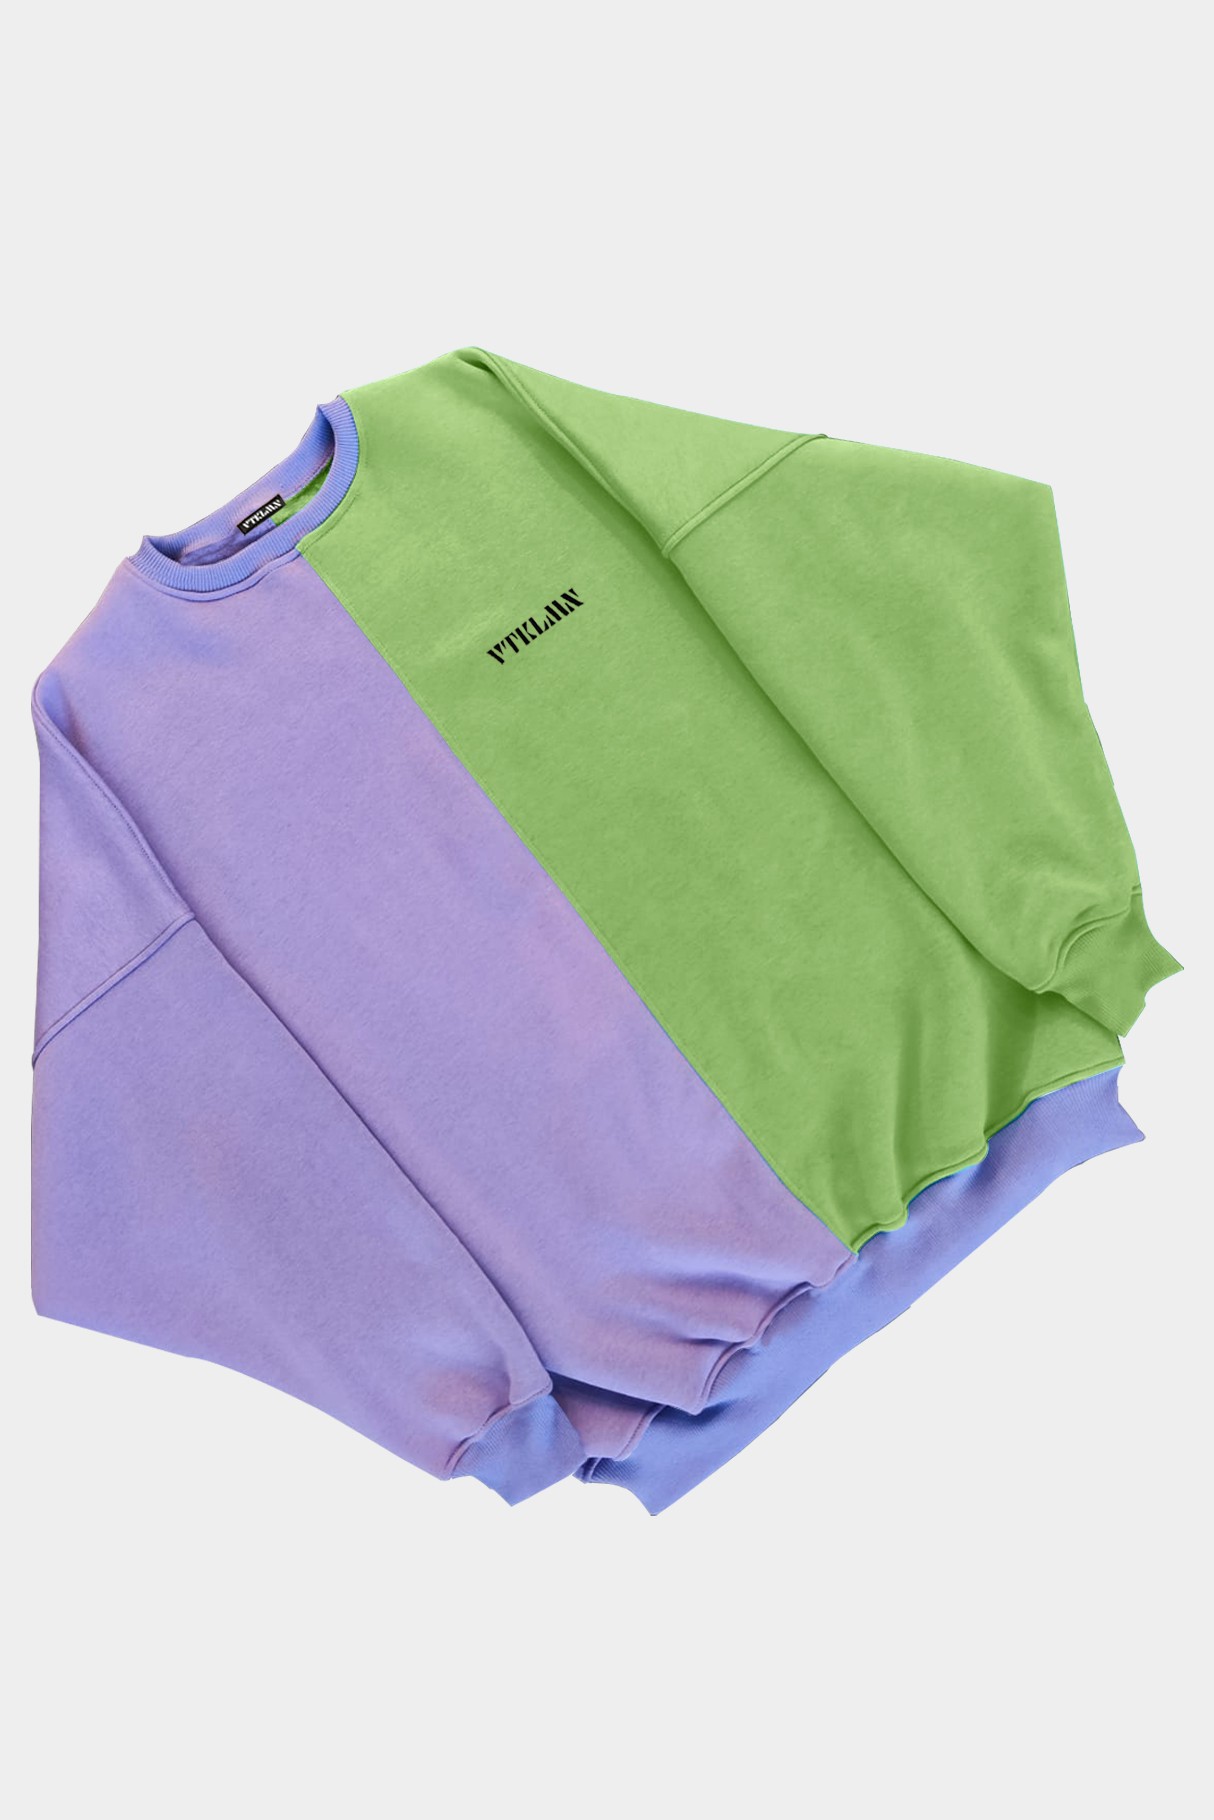  Kadın Erkek Renkli Sweatshirt - Lila Yeşil